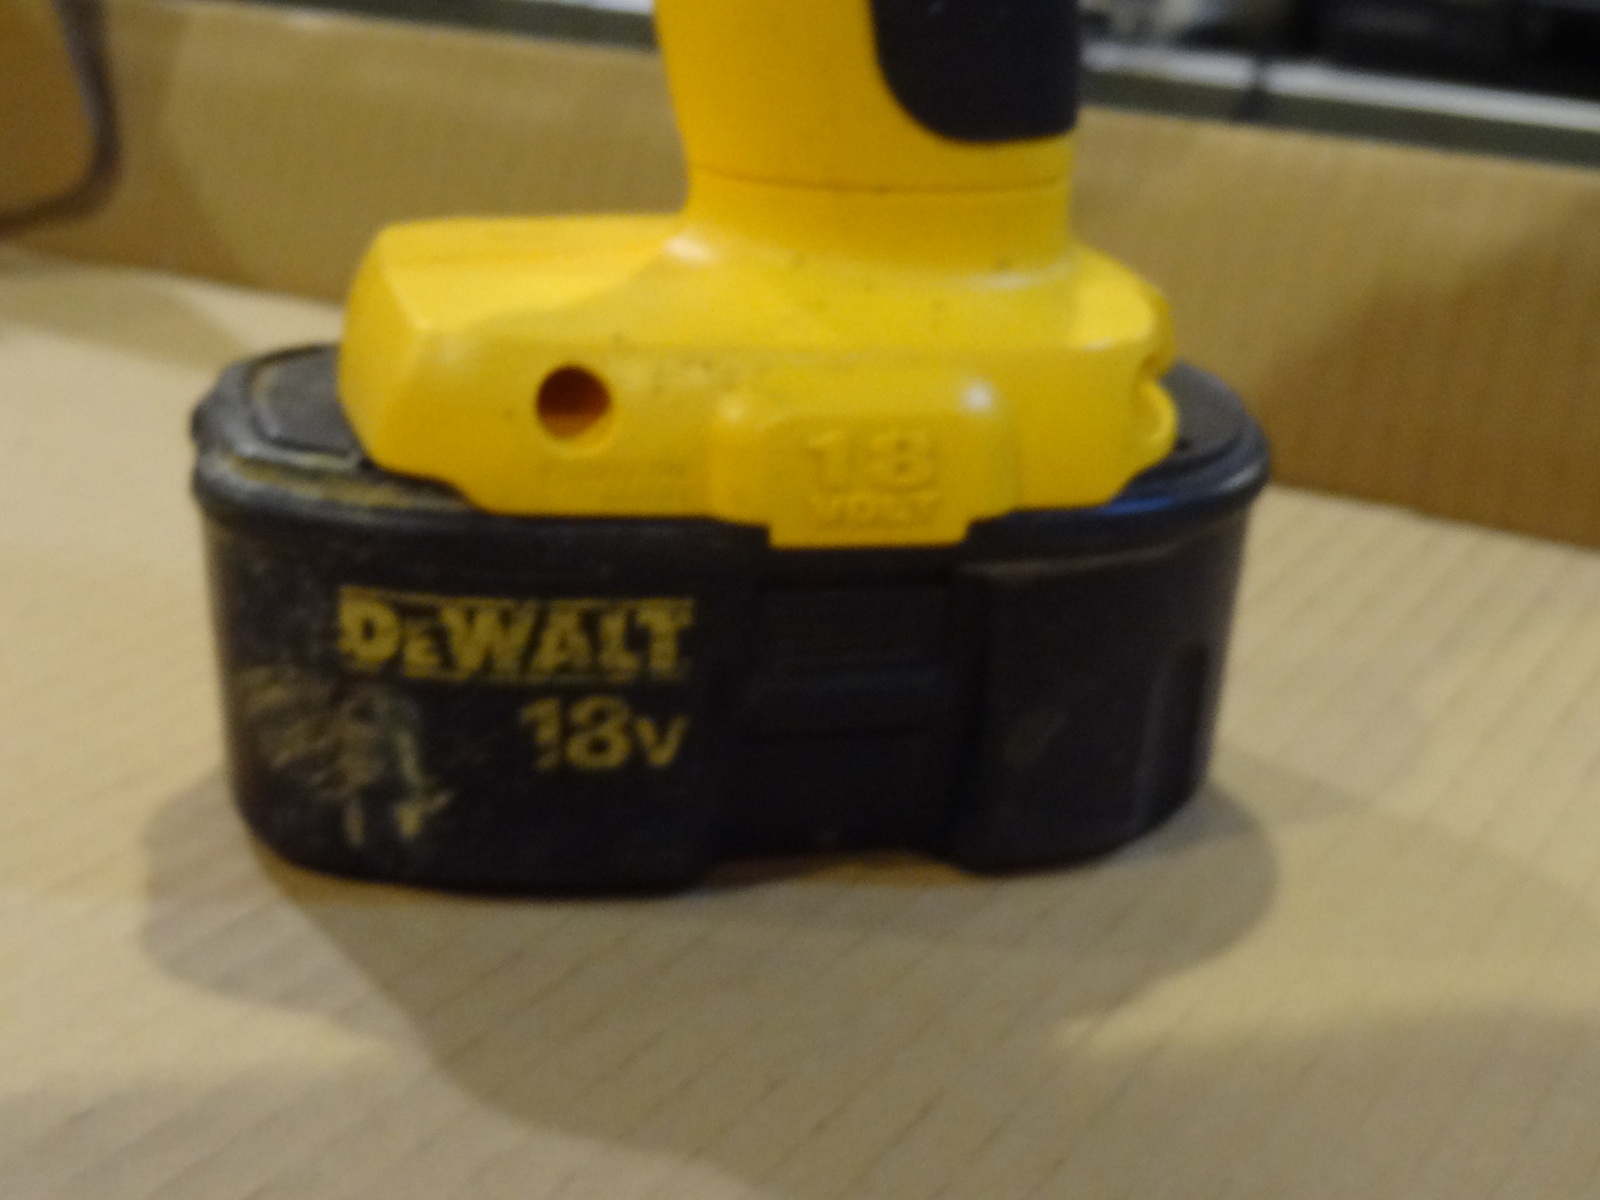 Dewalt DW059 Heavy Duty 1/2